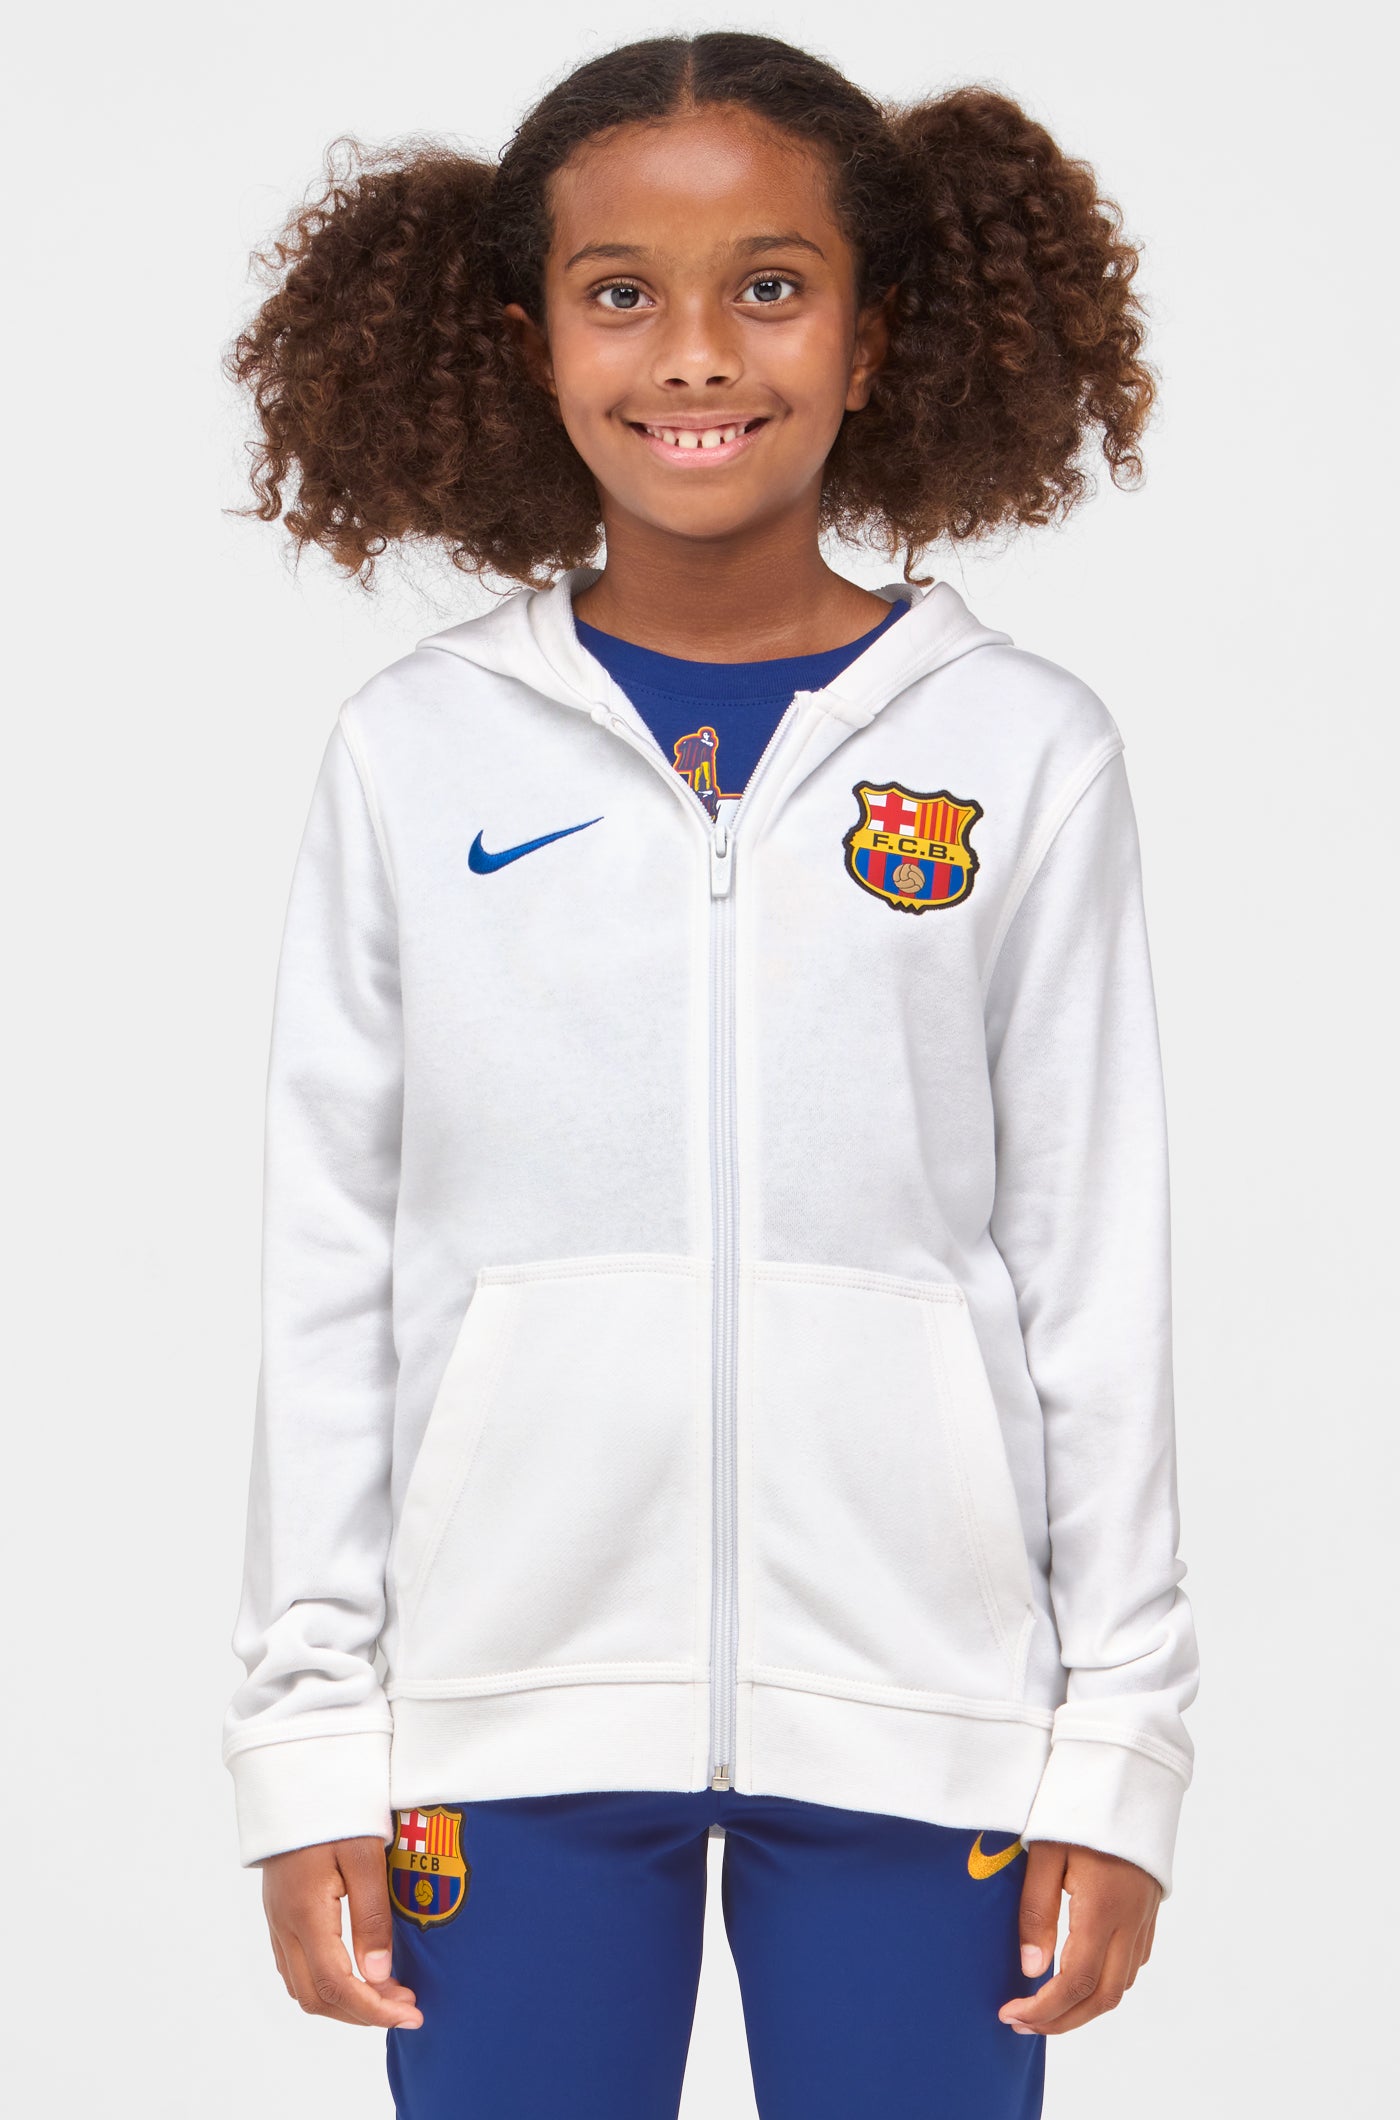 Beraadslagen Ooit schommel Jacket white Barça Nike - Junior – Barça Official Store Spotify Camp Nou